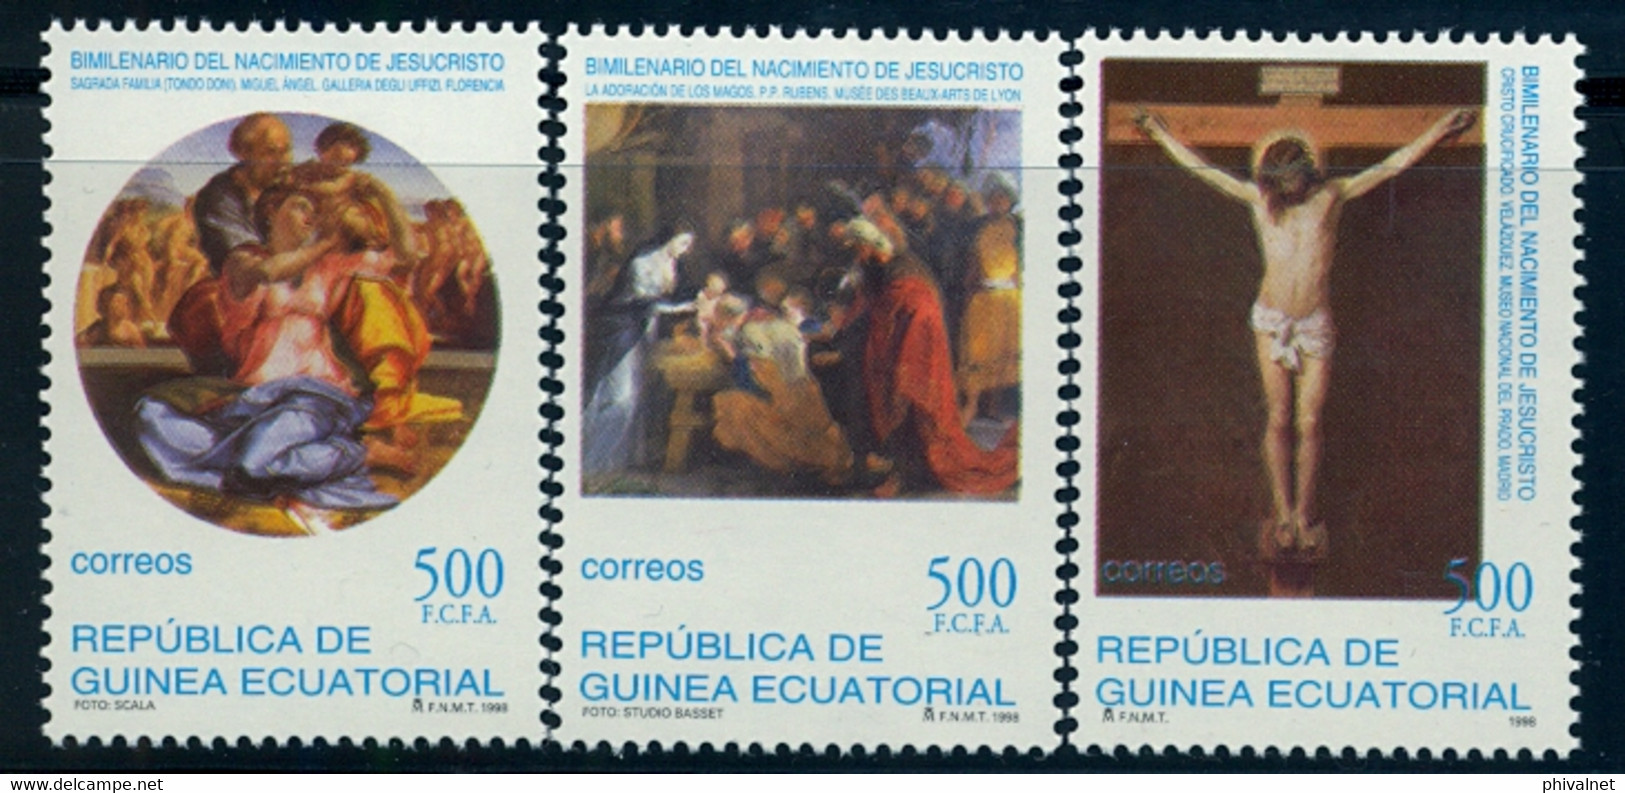 GUINEA ECUATORIAL , ED. 252 / 254 **, BIMILENARIO DEL NACIMIENTO DE JESUCRISTO , RELIGIÓN , ARTE , PINTURA - Guinea Ecuatorial